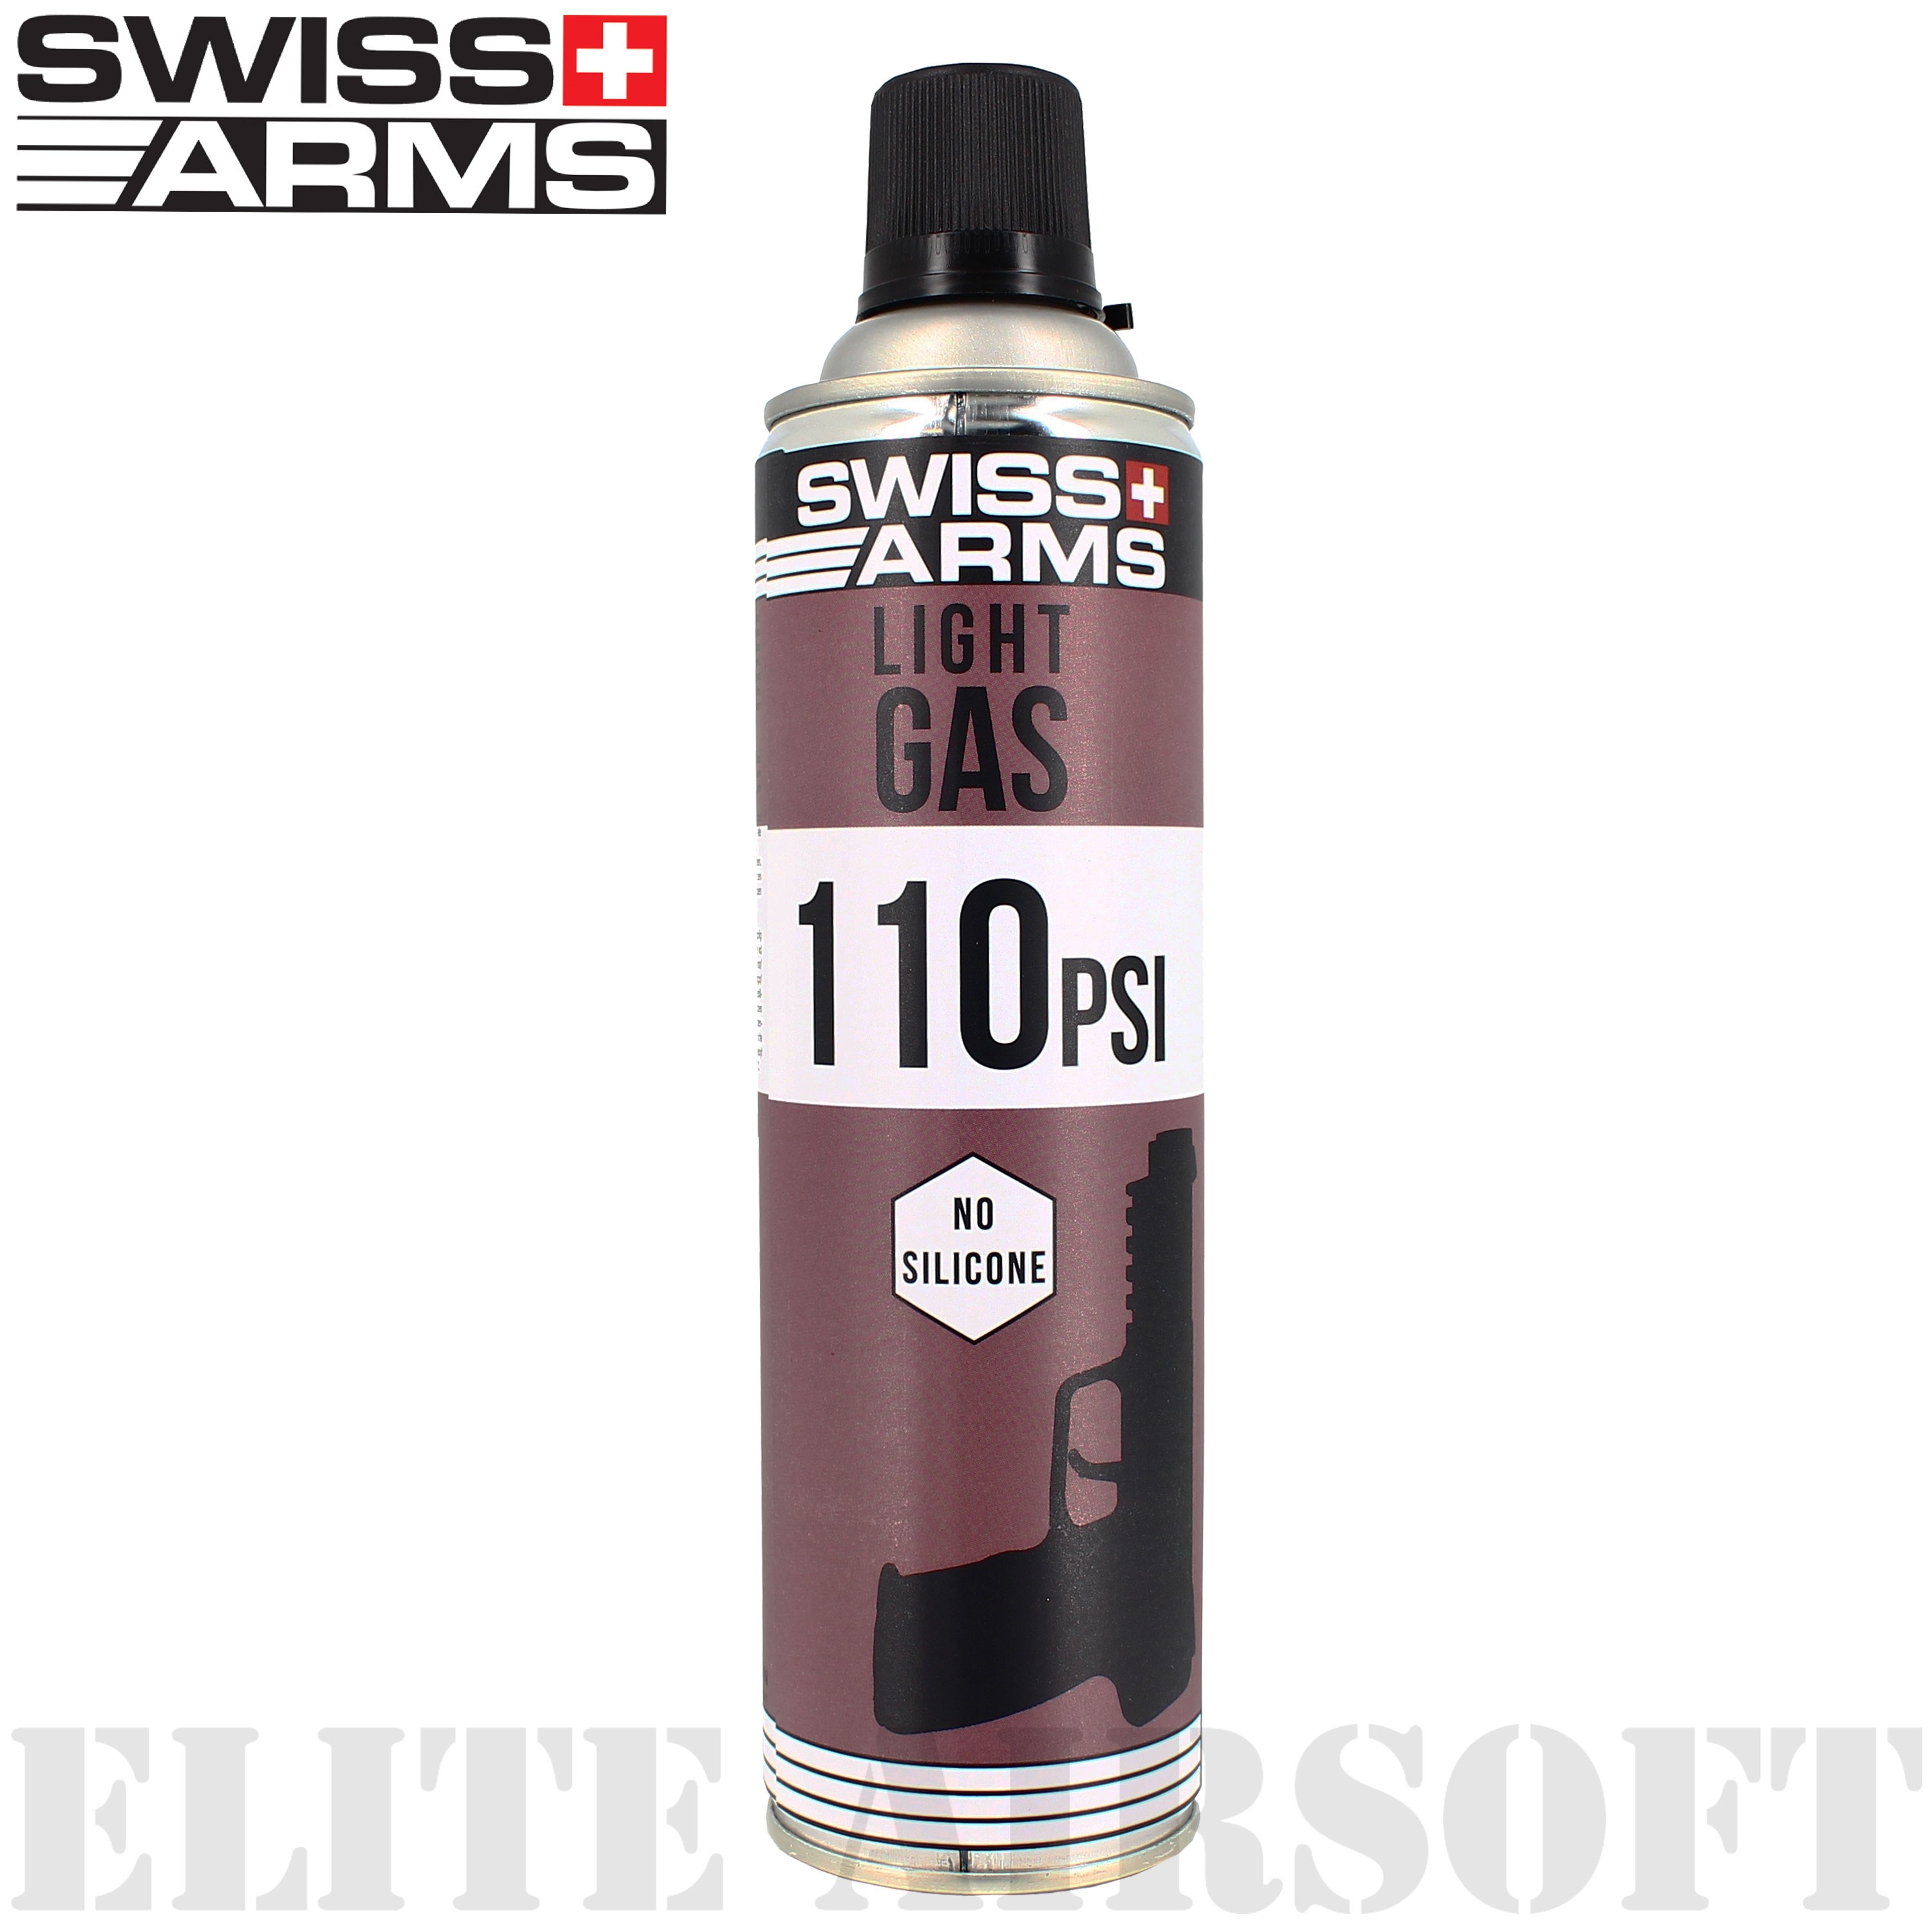 Swiss Arms - Bouteille de gaz "5-7 Light" - 110 PSI - 600ml - Sec 